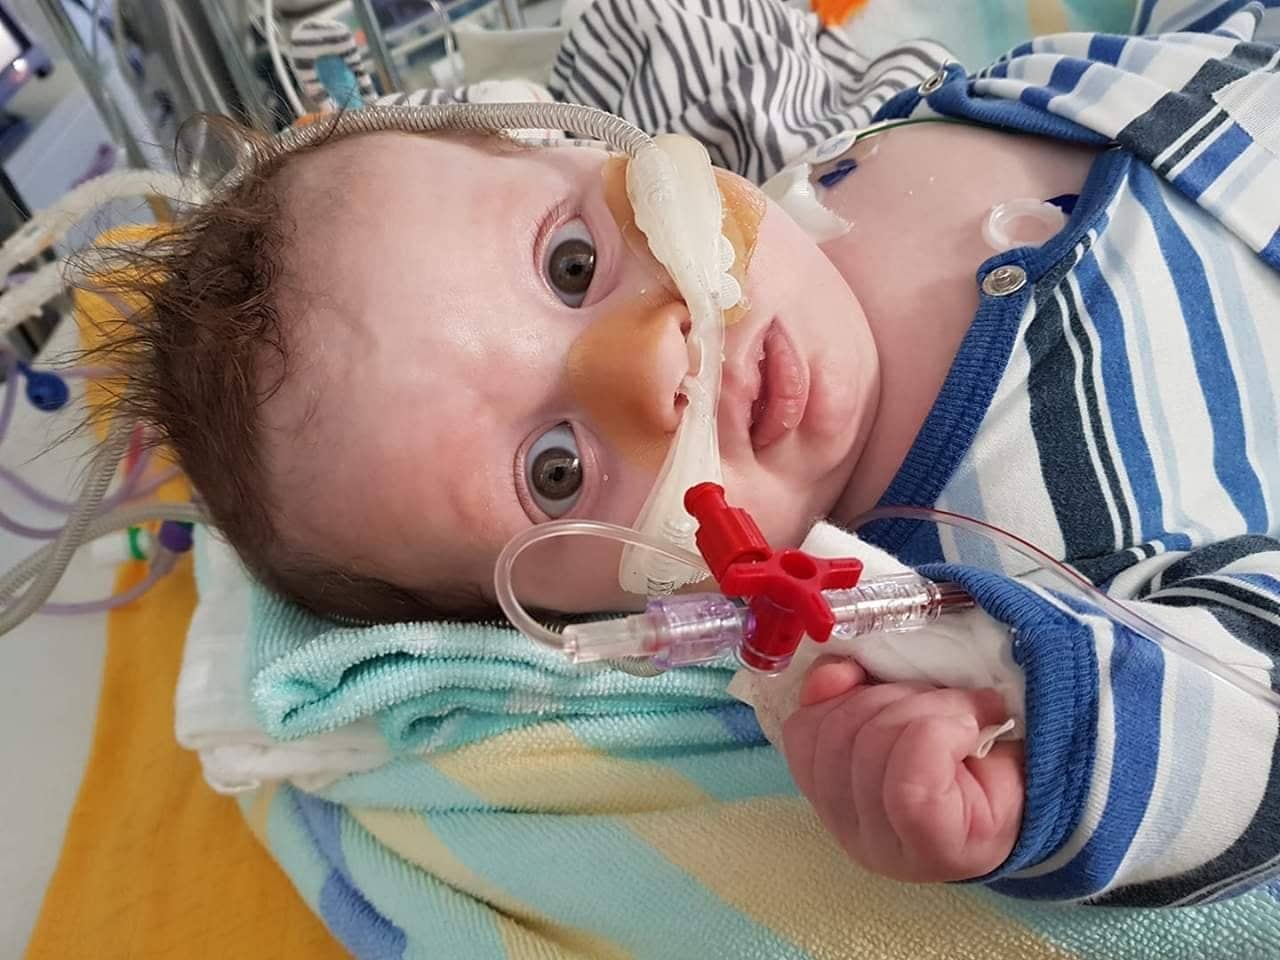 Baby Niklas ist derzeit im LKH Villach - sein Gesundheitszustand hat sich verschlimmert